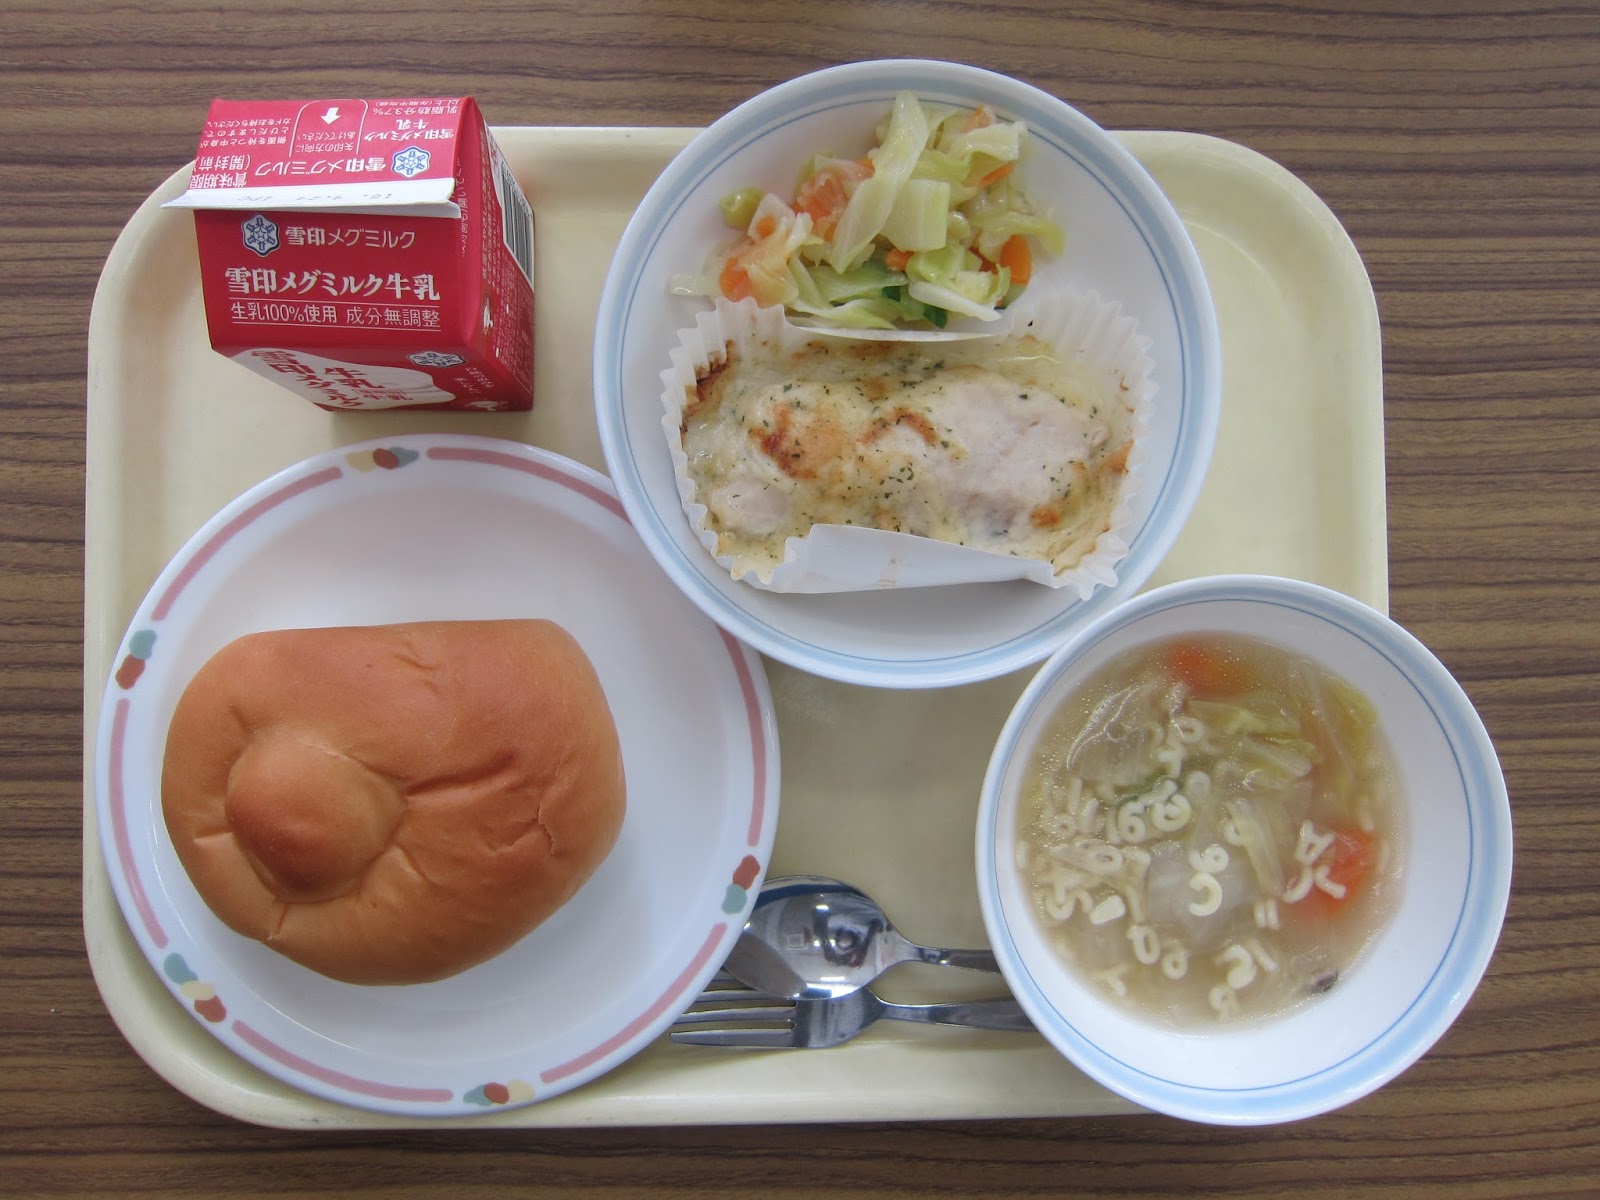 矢口東小学校 給食室より ミルクパン 牛乳 魚のモルネソース焼き コールスロー Abcマカロニスープ